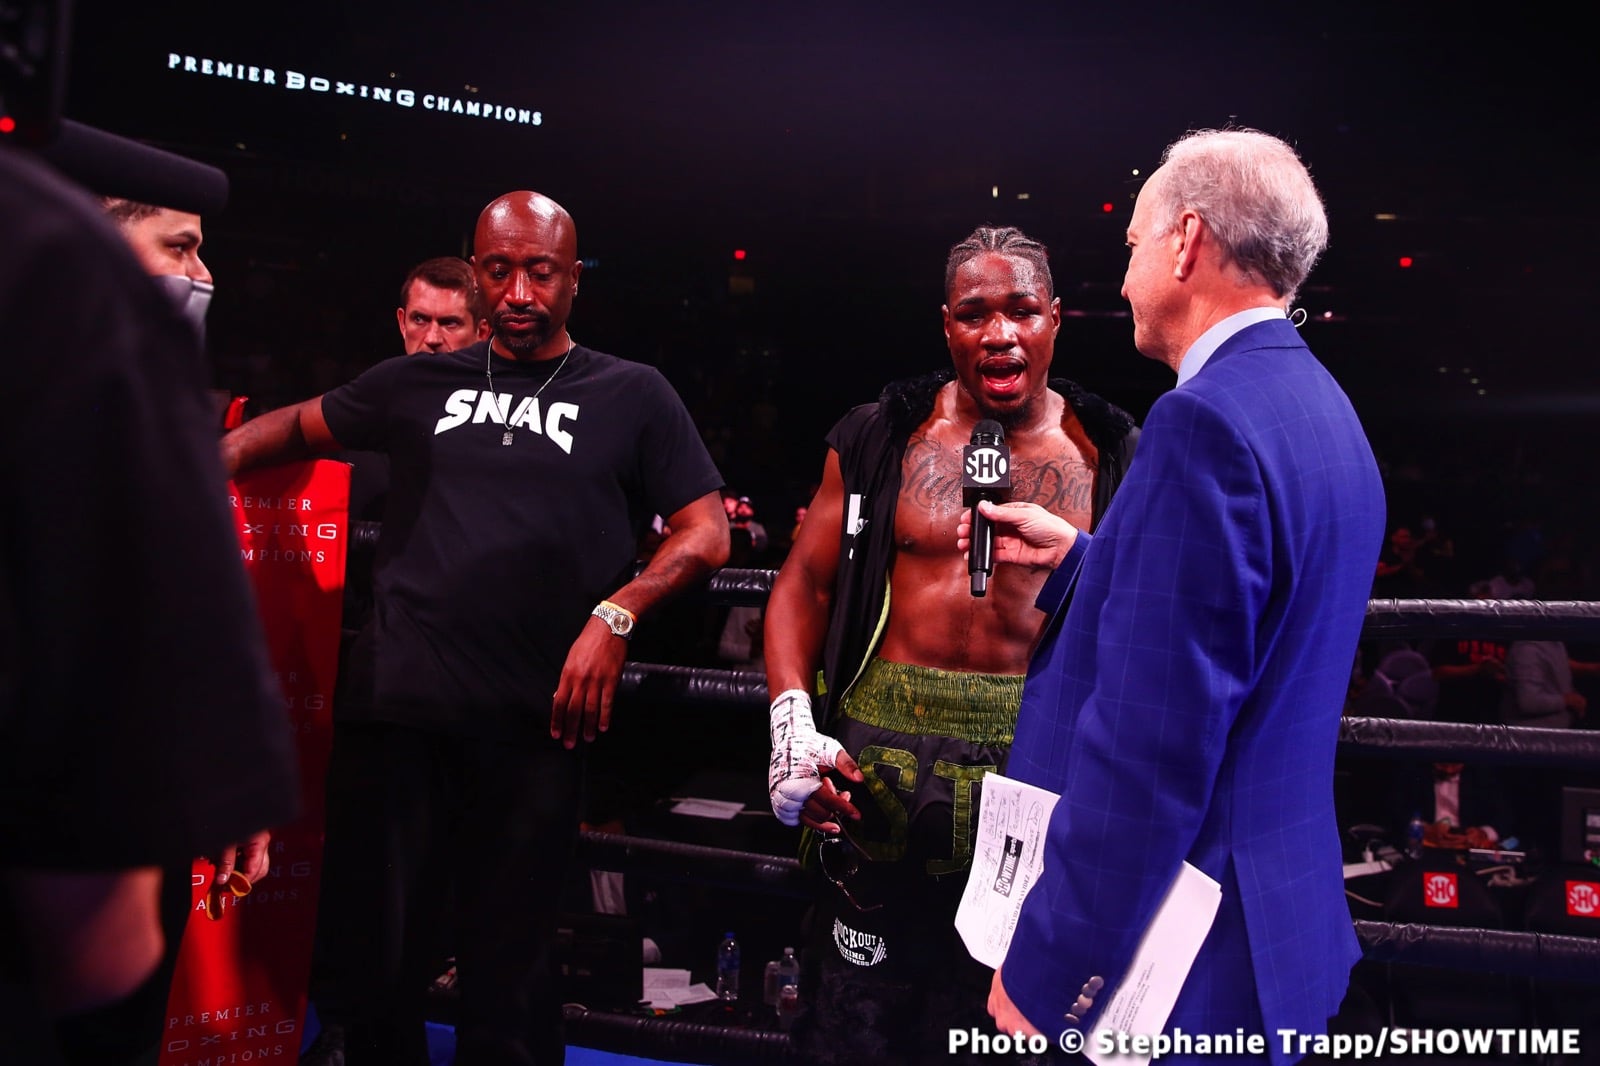 Image: Boxing Results: Benavidez Stops Davis!